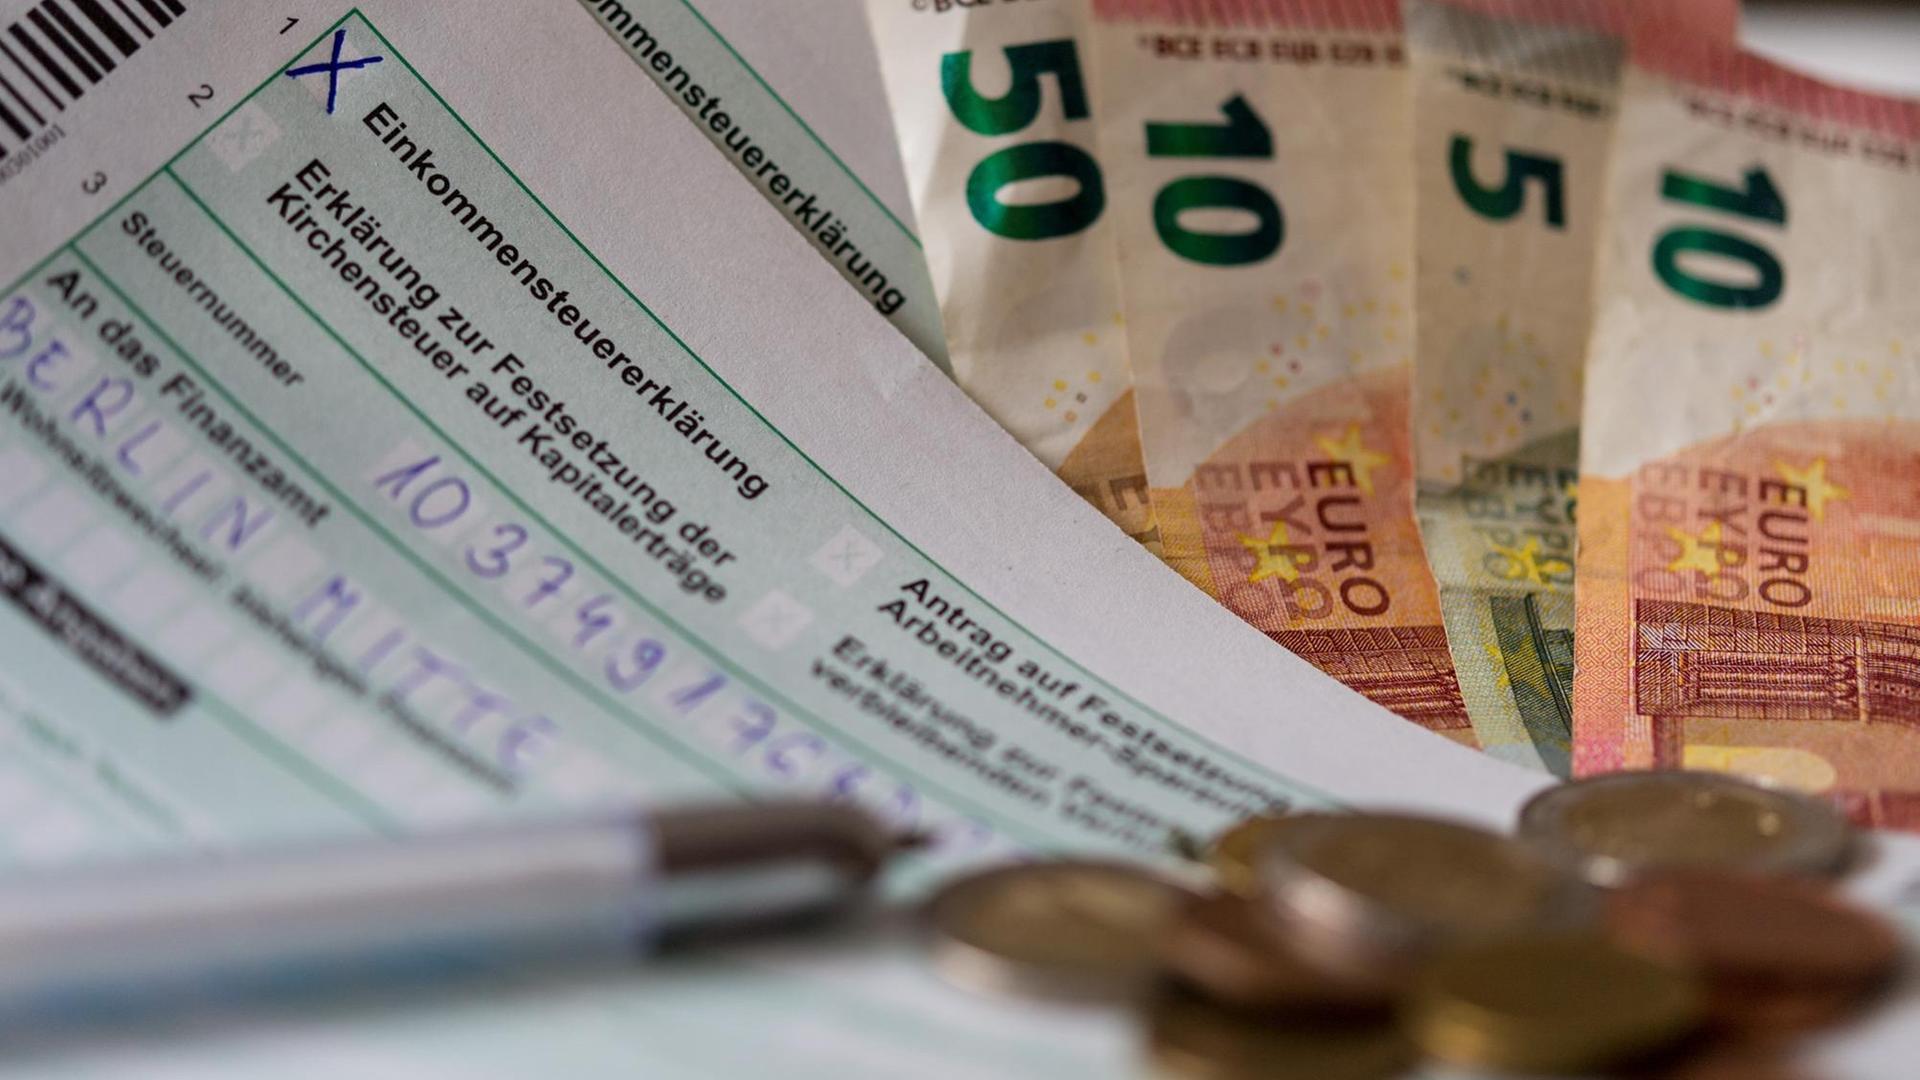 Ein Formular für eine Steuer-Erklärung liegt mit Geld-Scheinen und Münzen auf einem Tisch.